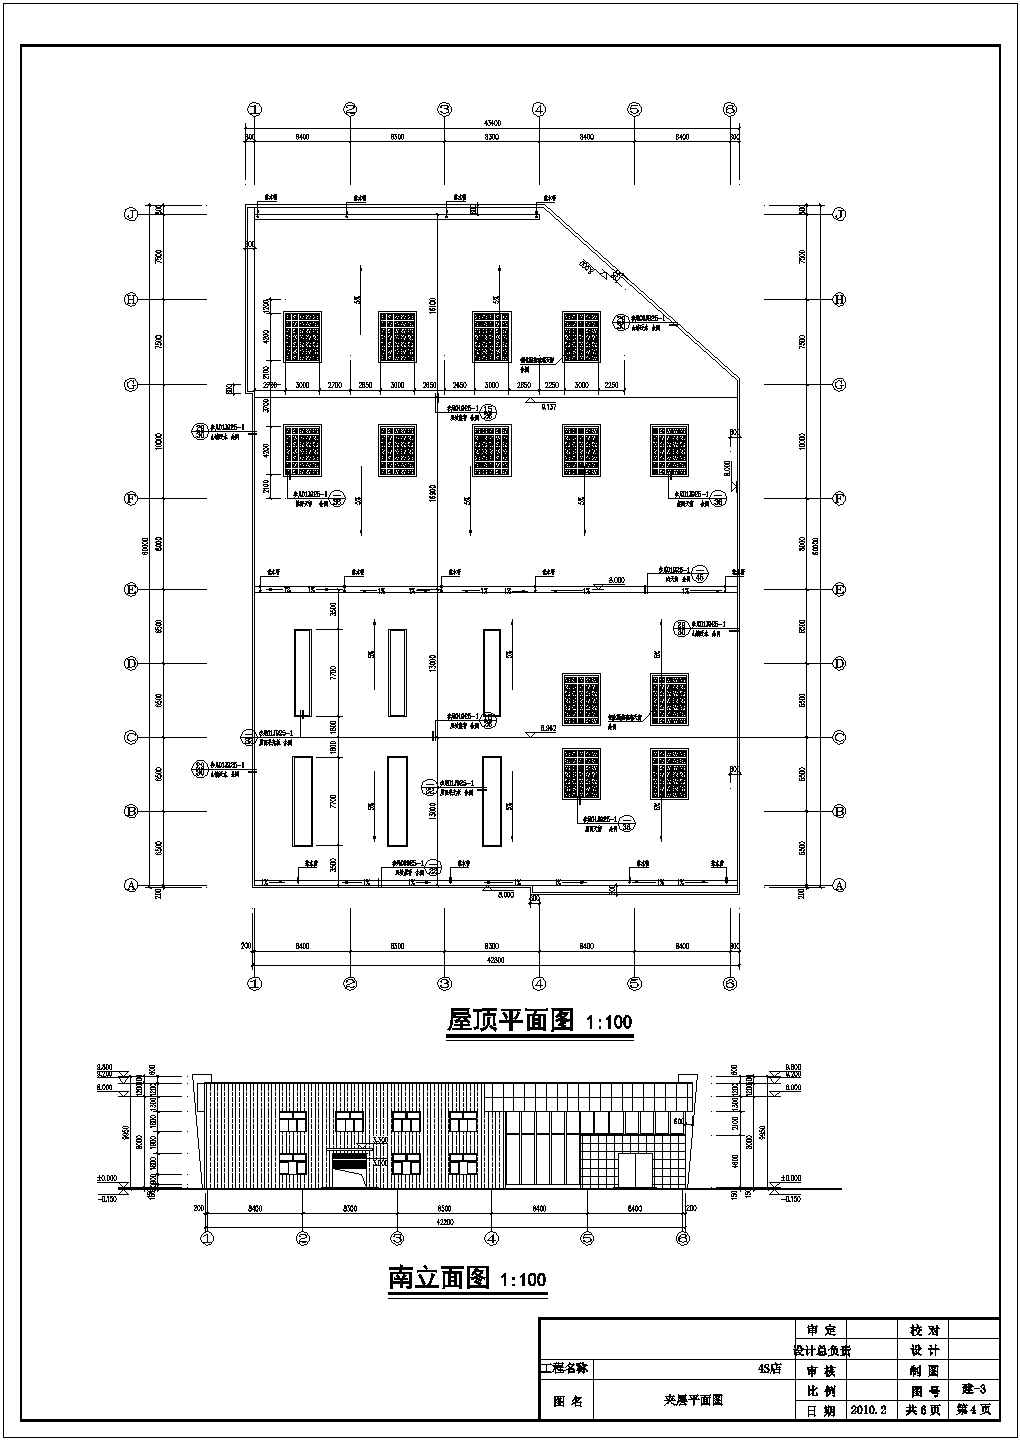 某4S店单层钢结构生产维护车间建筑施工图